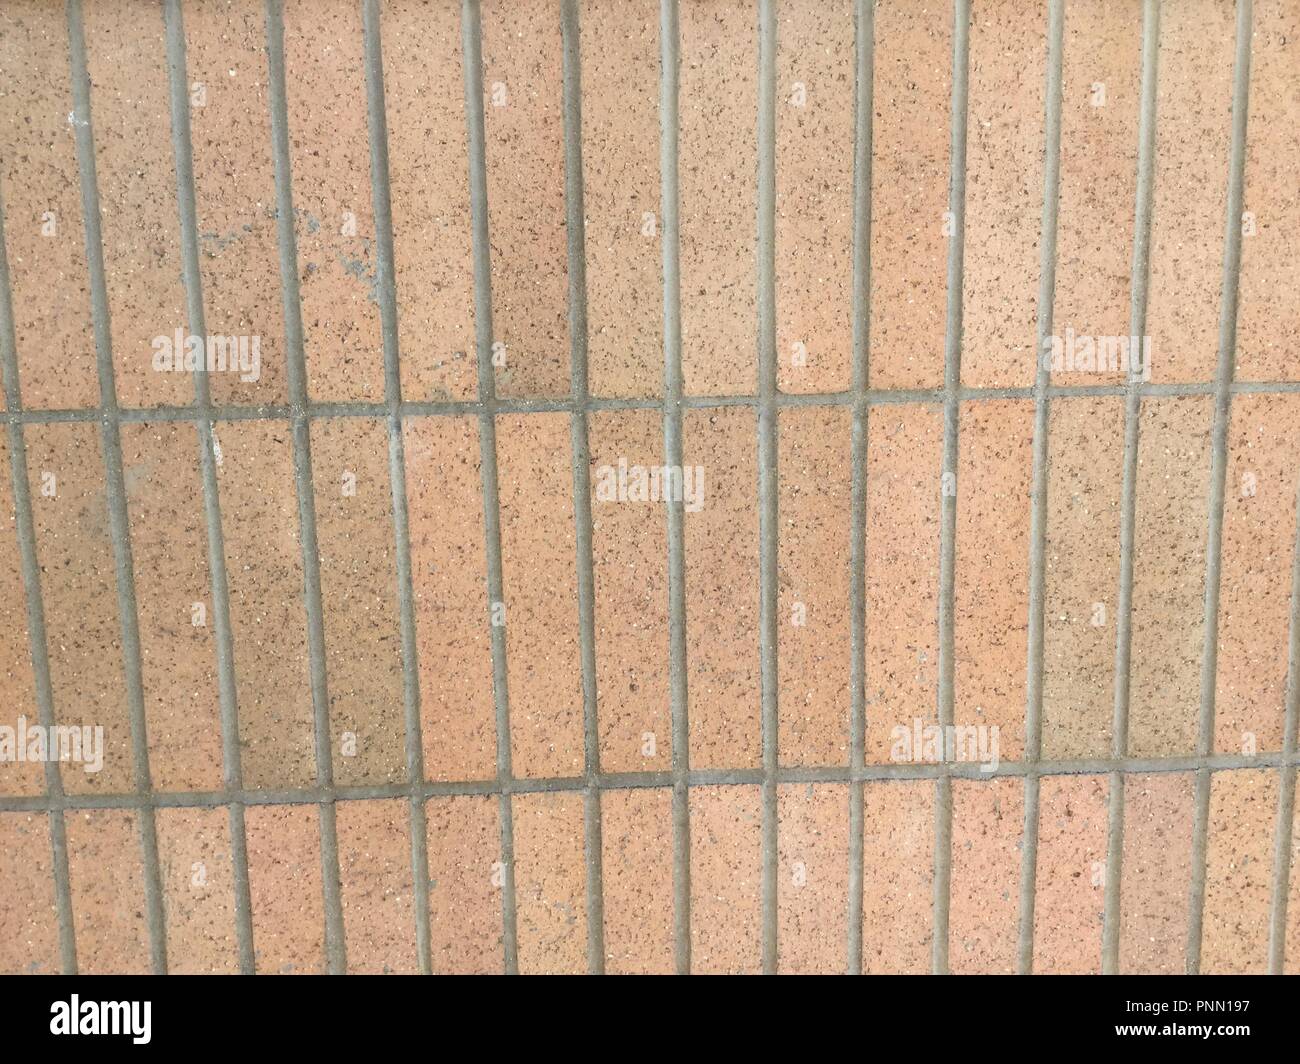 Long thin vertical bricks forming a brick wall. Stock Photo